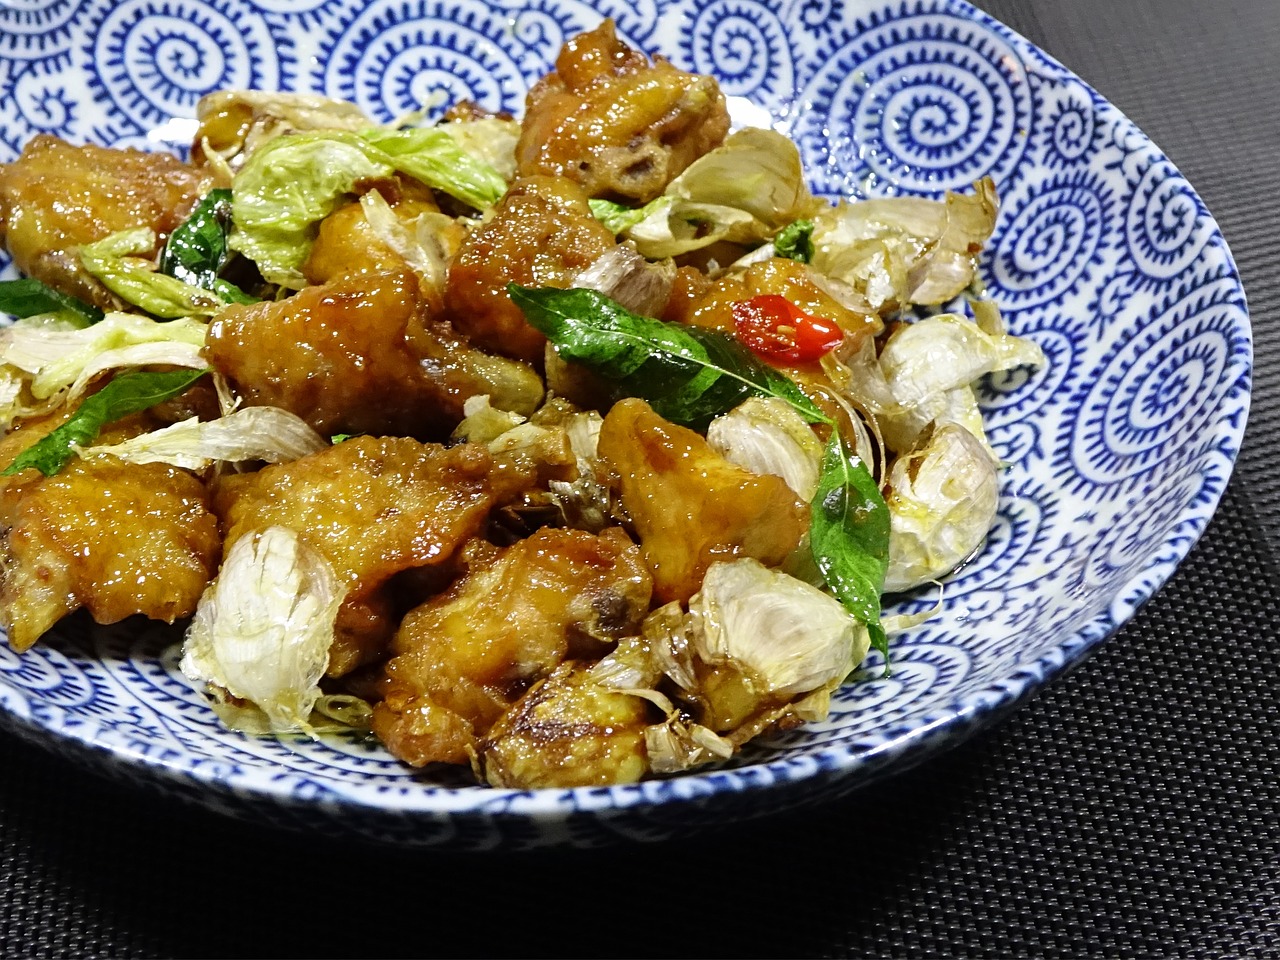 chicken stir-fried 风味鸡 free photo